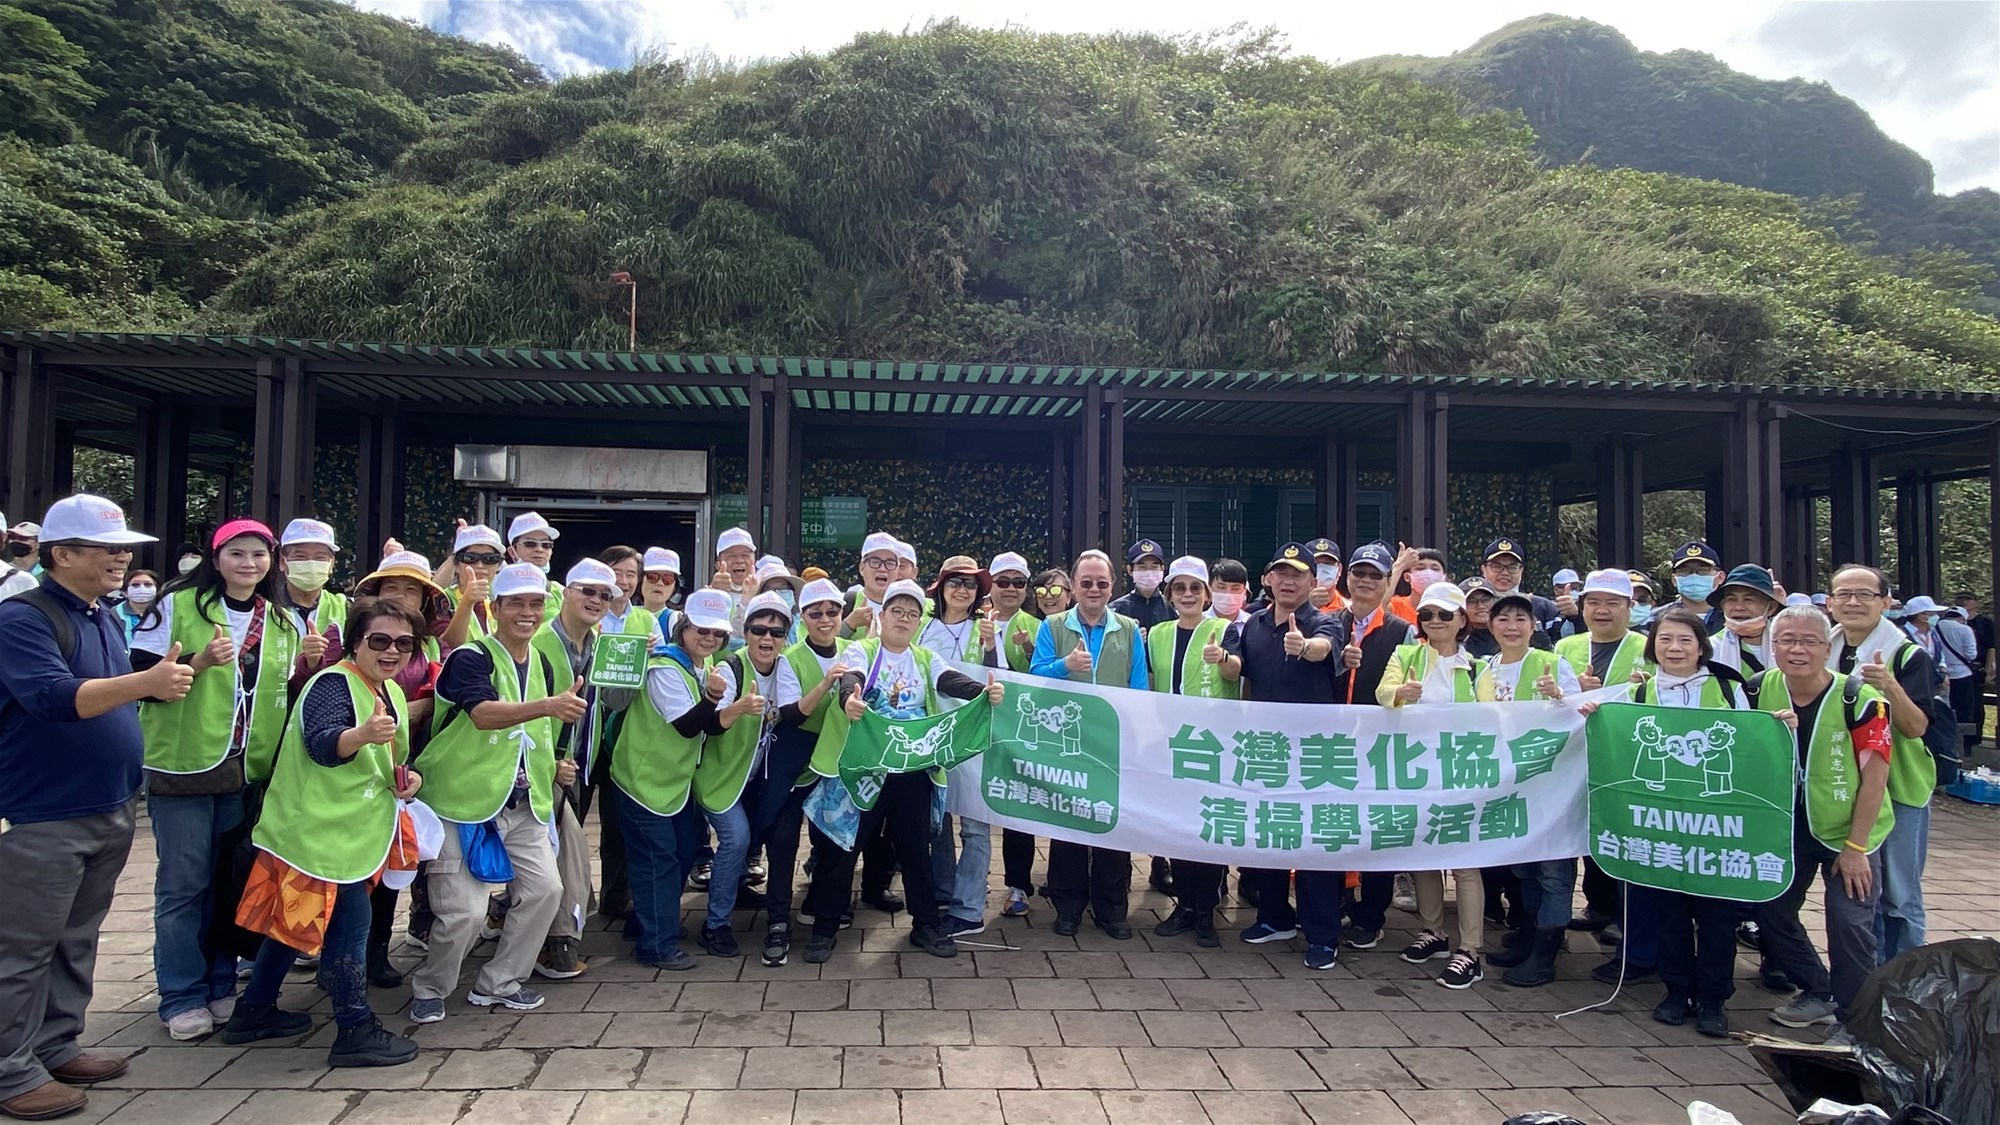 永續保育生態 2023龜山島淨灘活動 ~龜山島生態旅遊3月1日開放登島